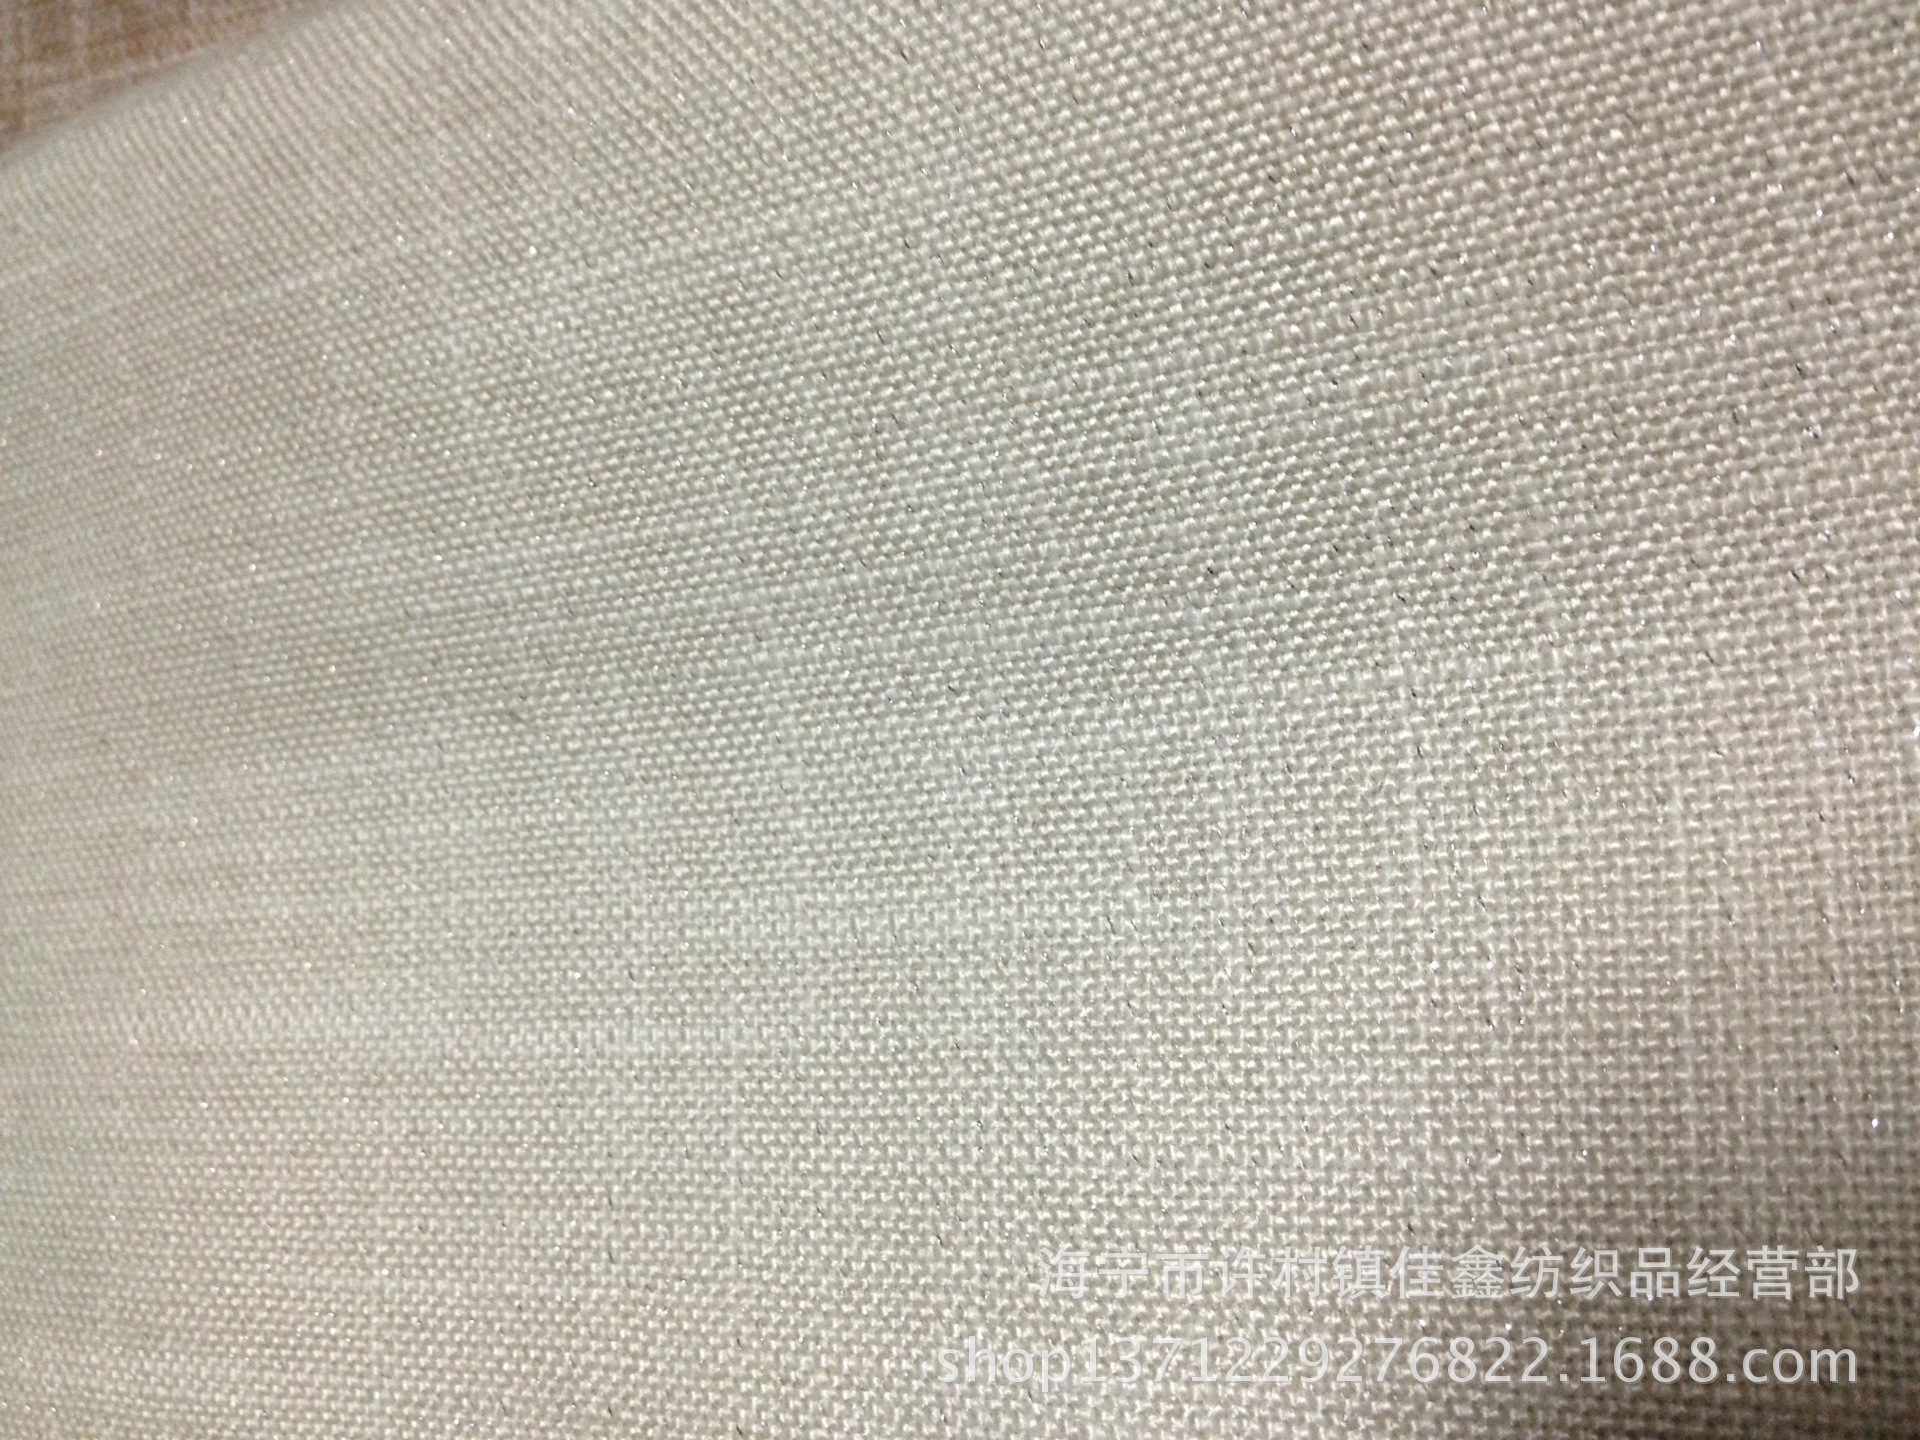 供应多色高档细麻布料 内添银丝装饰装修布料 沙发布料